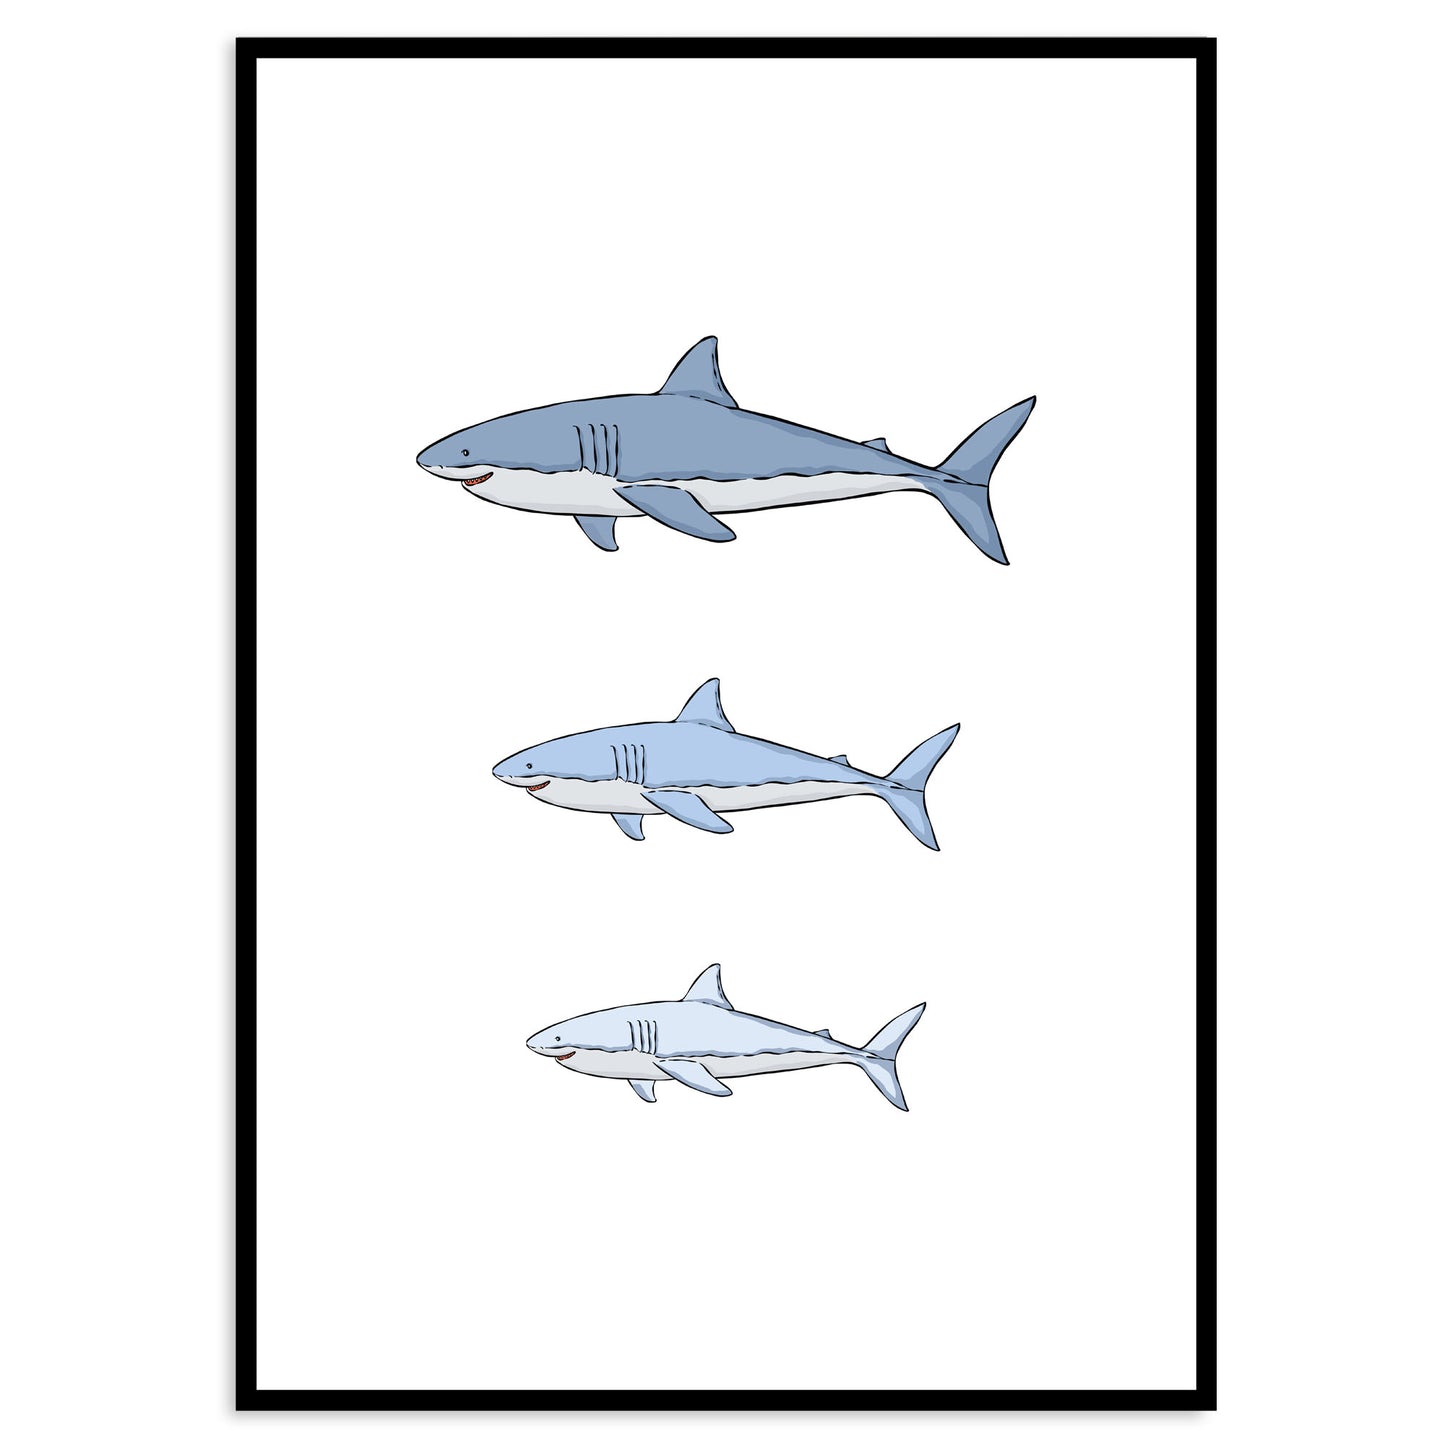 Stampa artistica della famiglia degli squali